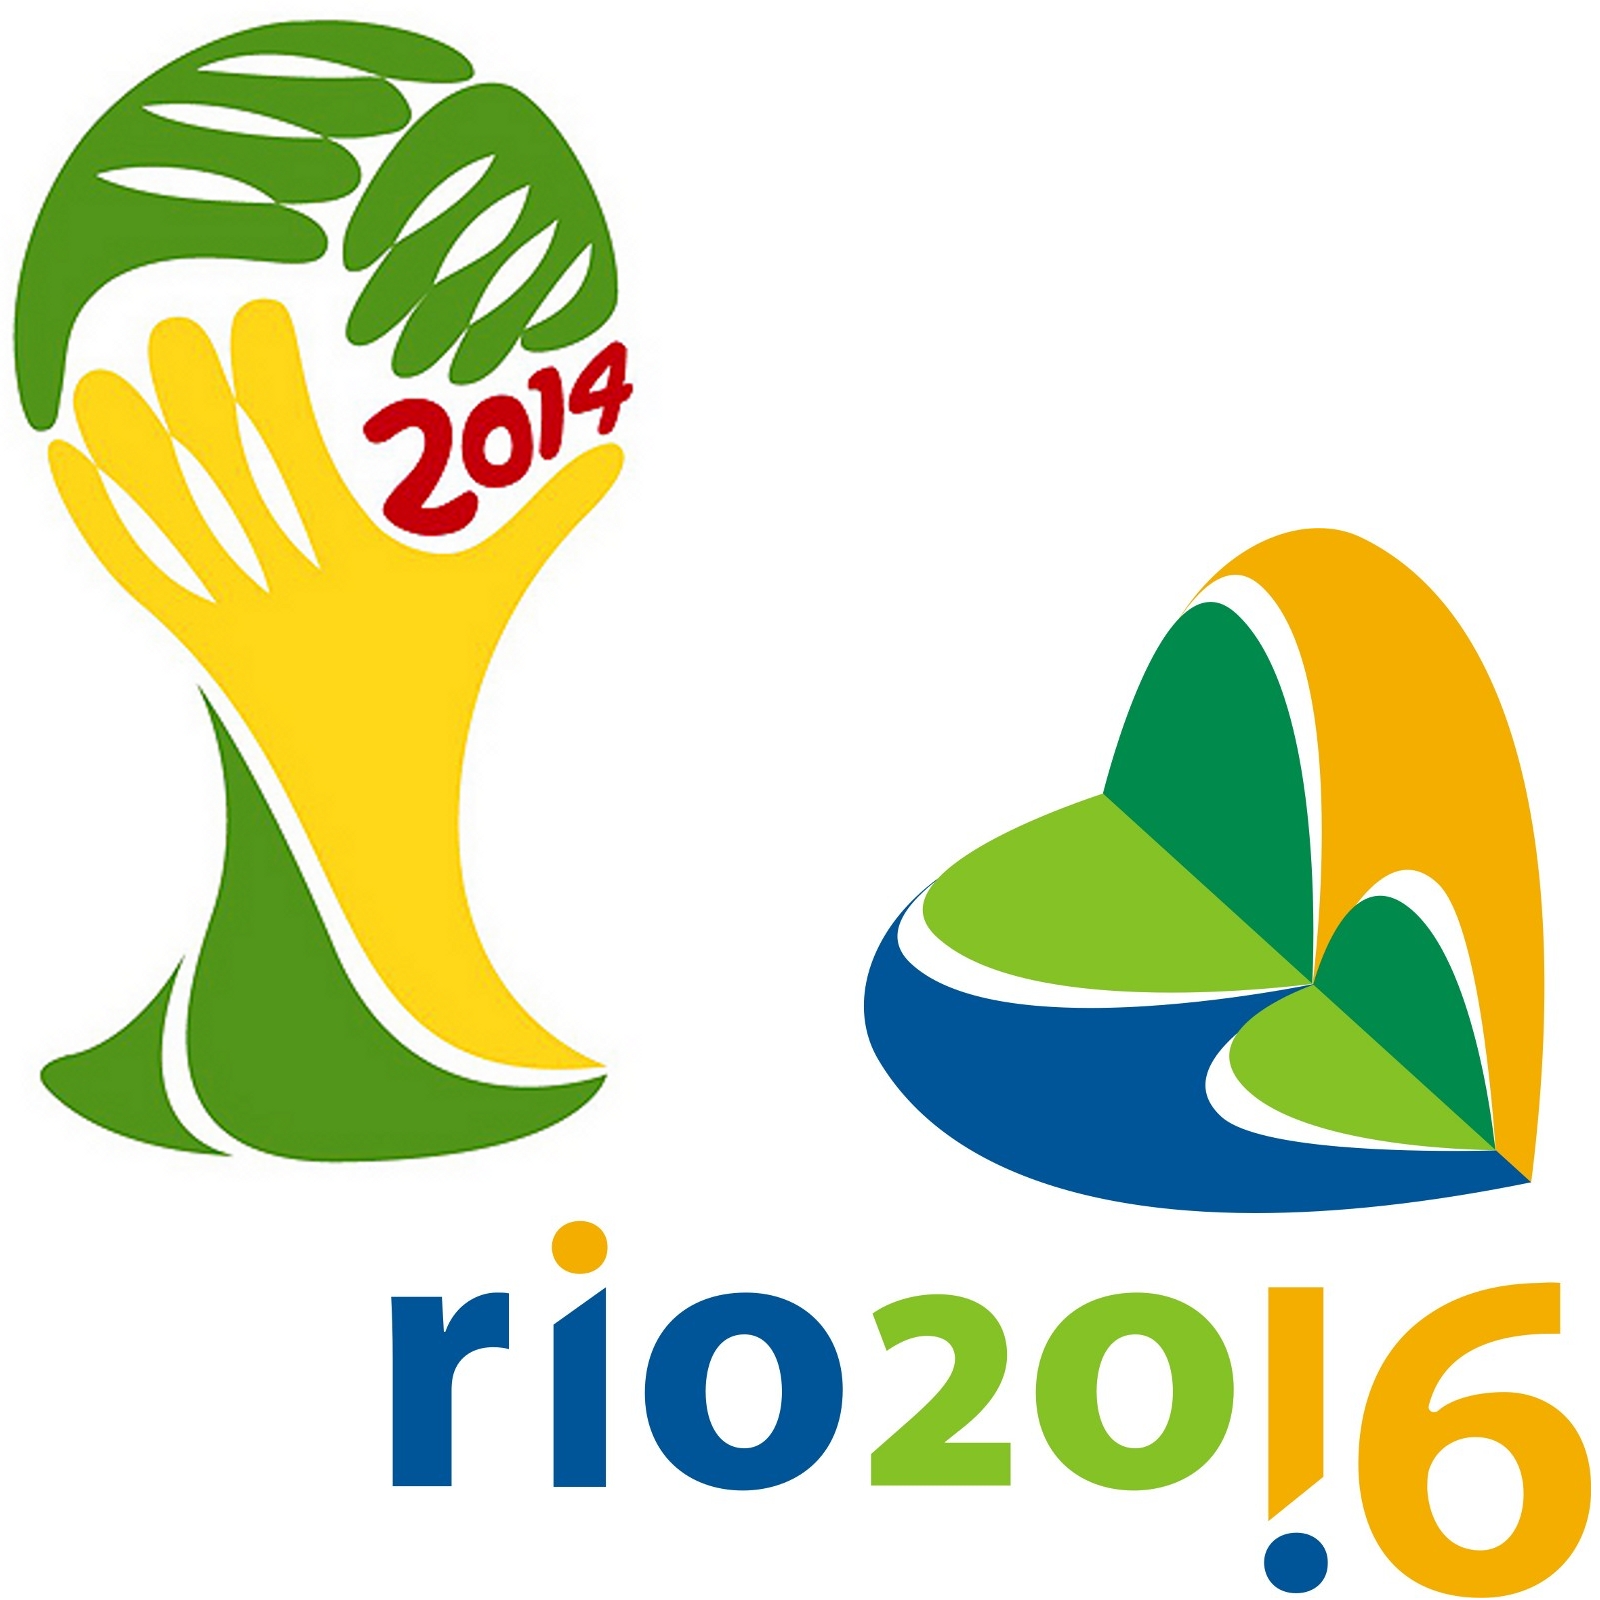 Especial Copa do Mundo FIFA 2010 – Informações, calendário